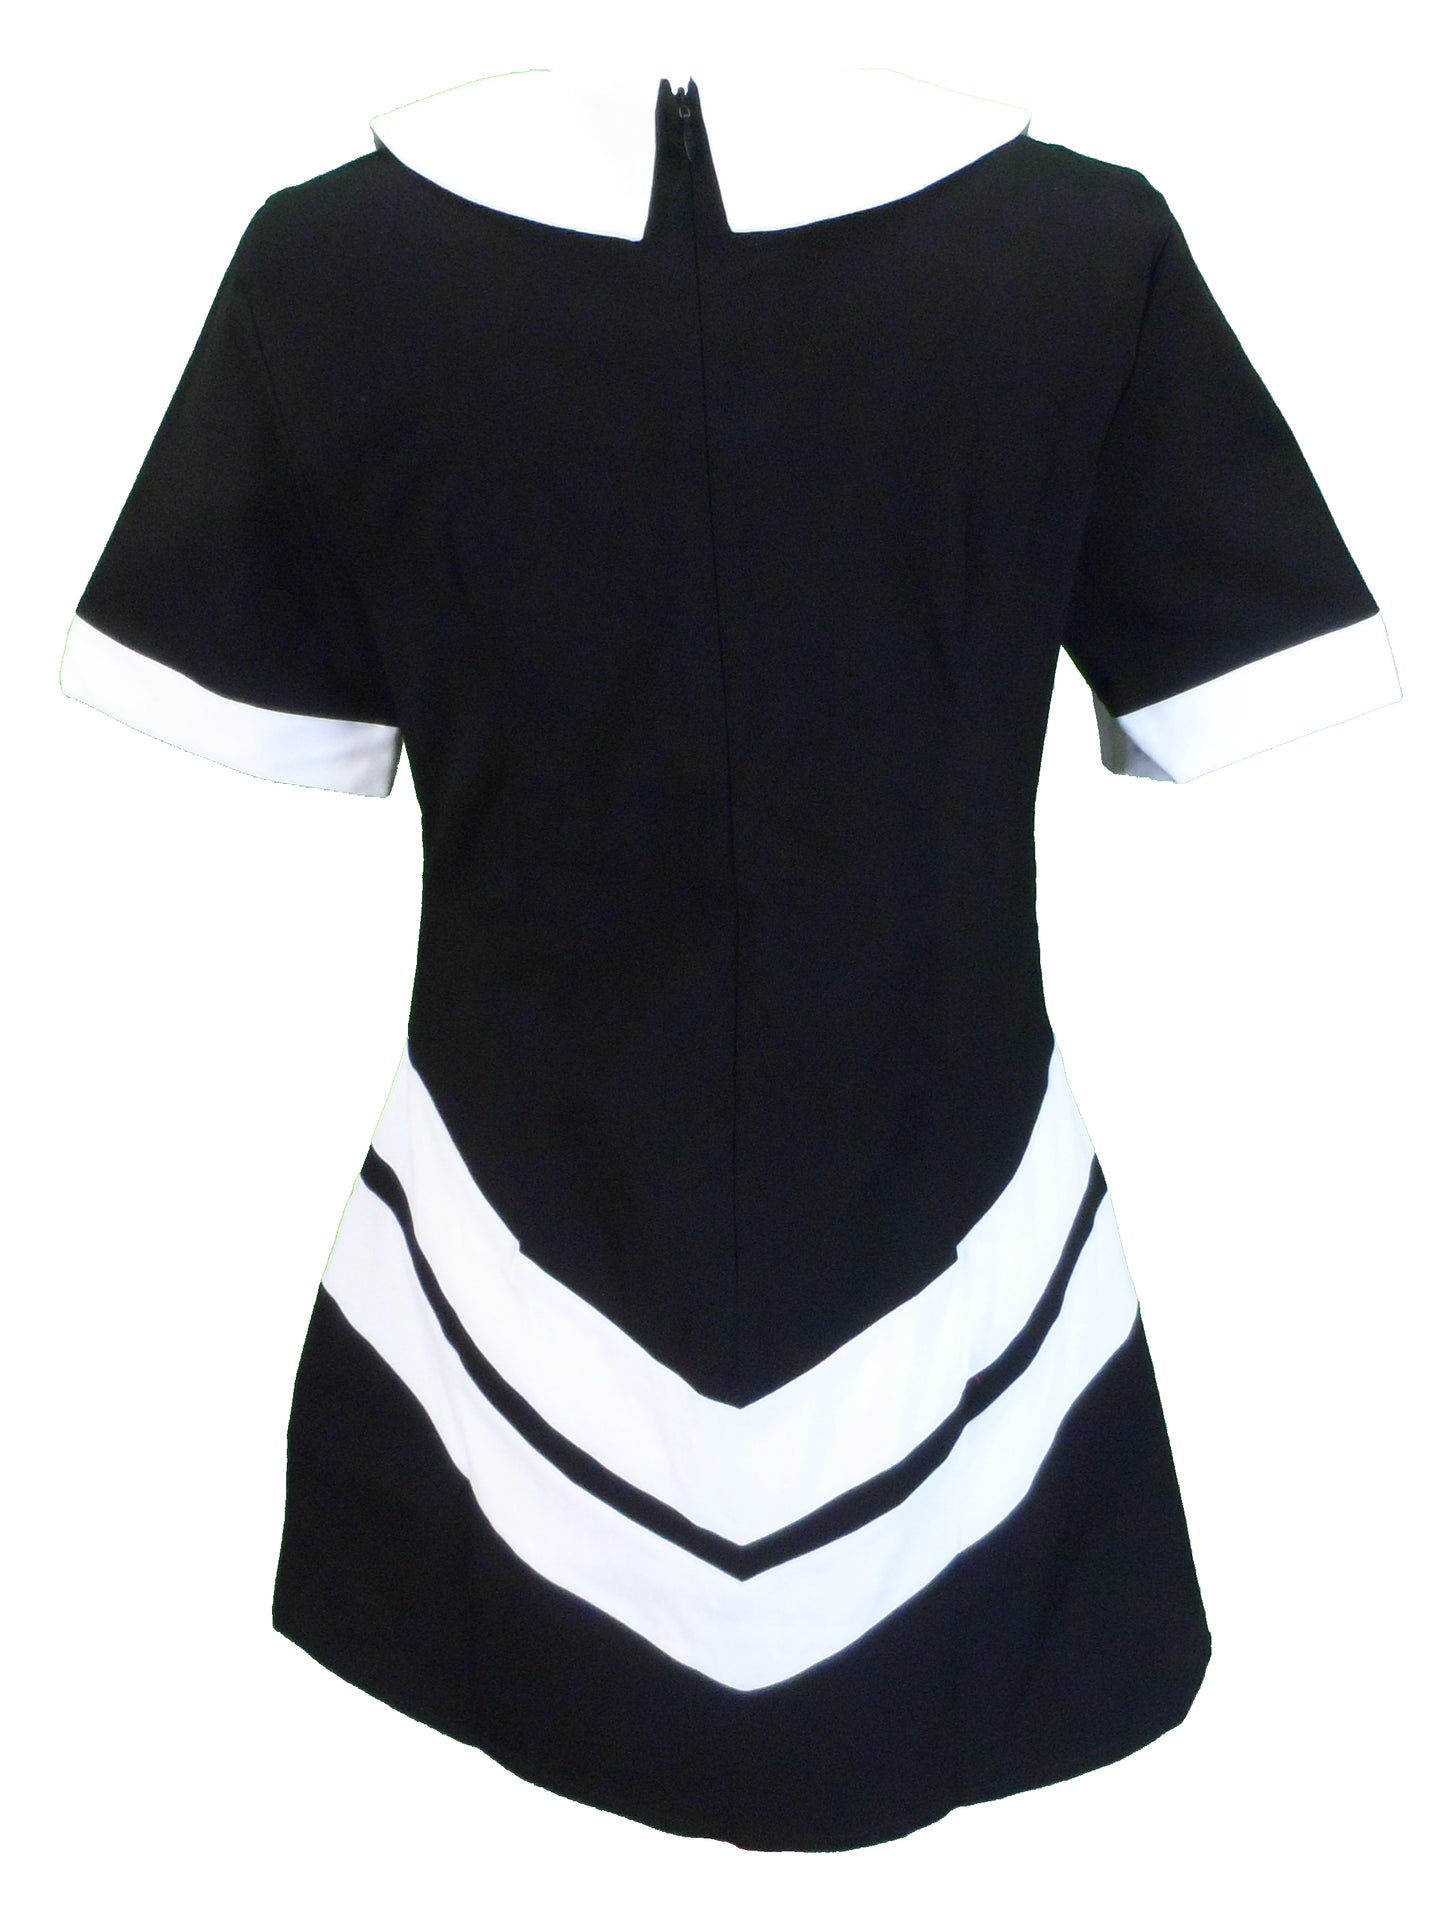 Ladies Retro Mod Vintage Black and White Chevron Dress